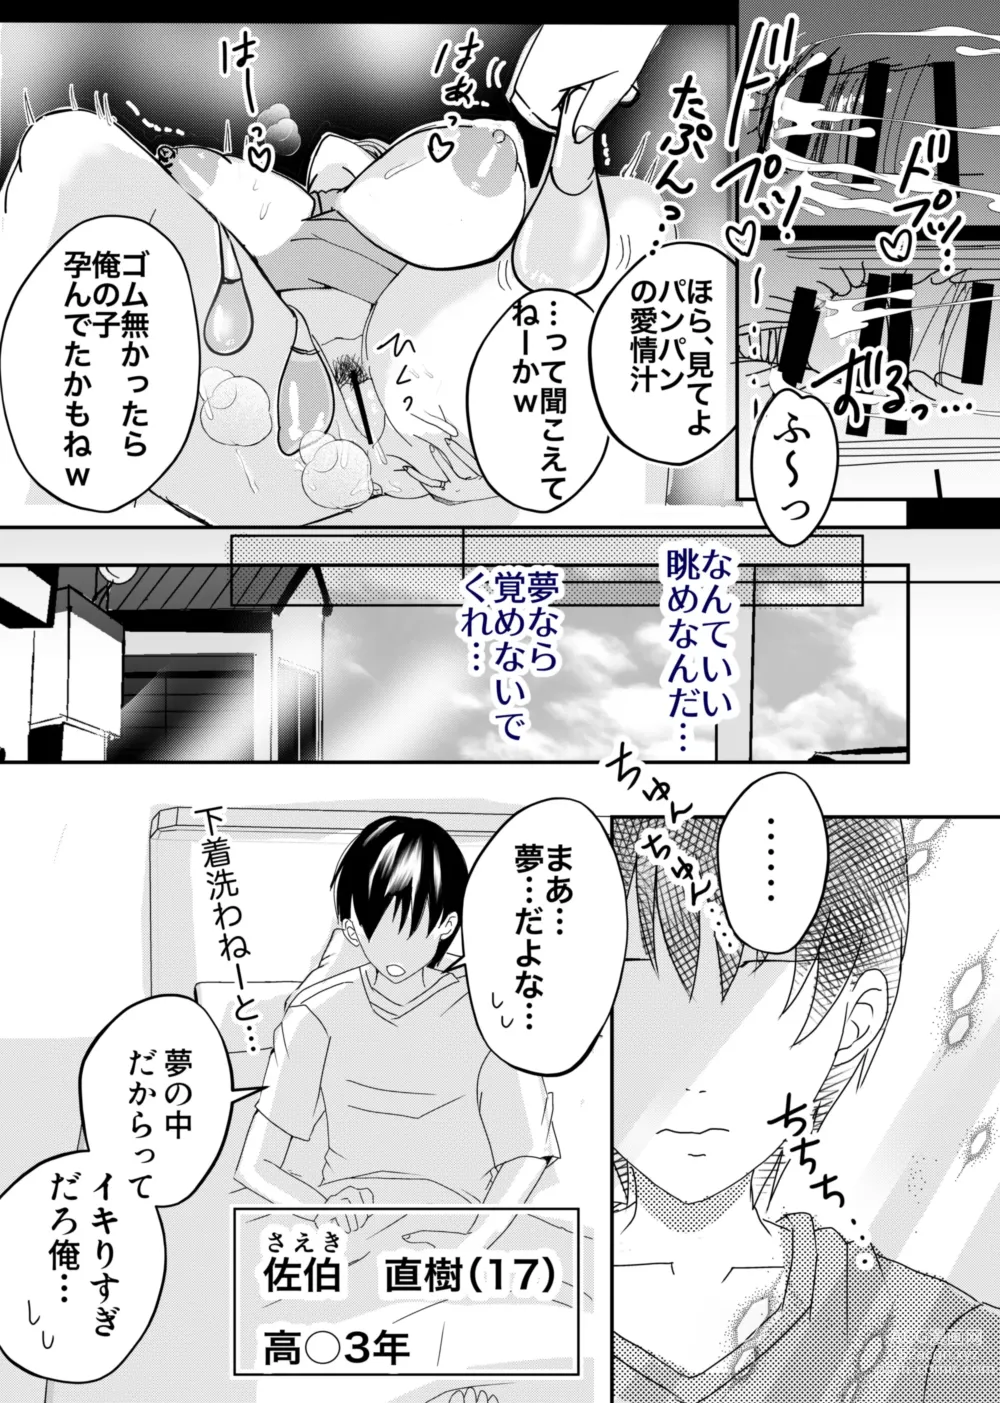 Page 12 of doujinshi Bonyuu Kaa-san no Tainai ni Modoritai Kaa-san ga Kinshin Koubi o Yumeda to Omoikondeti Kudan Zenpen